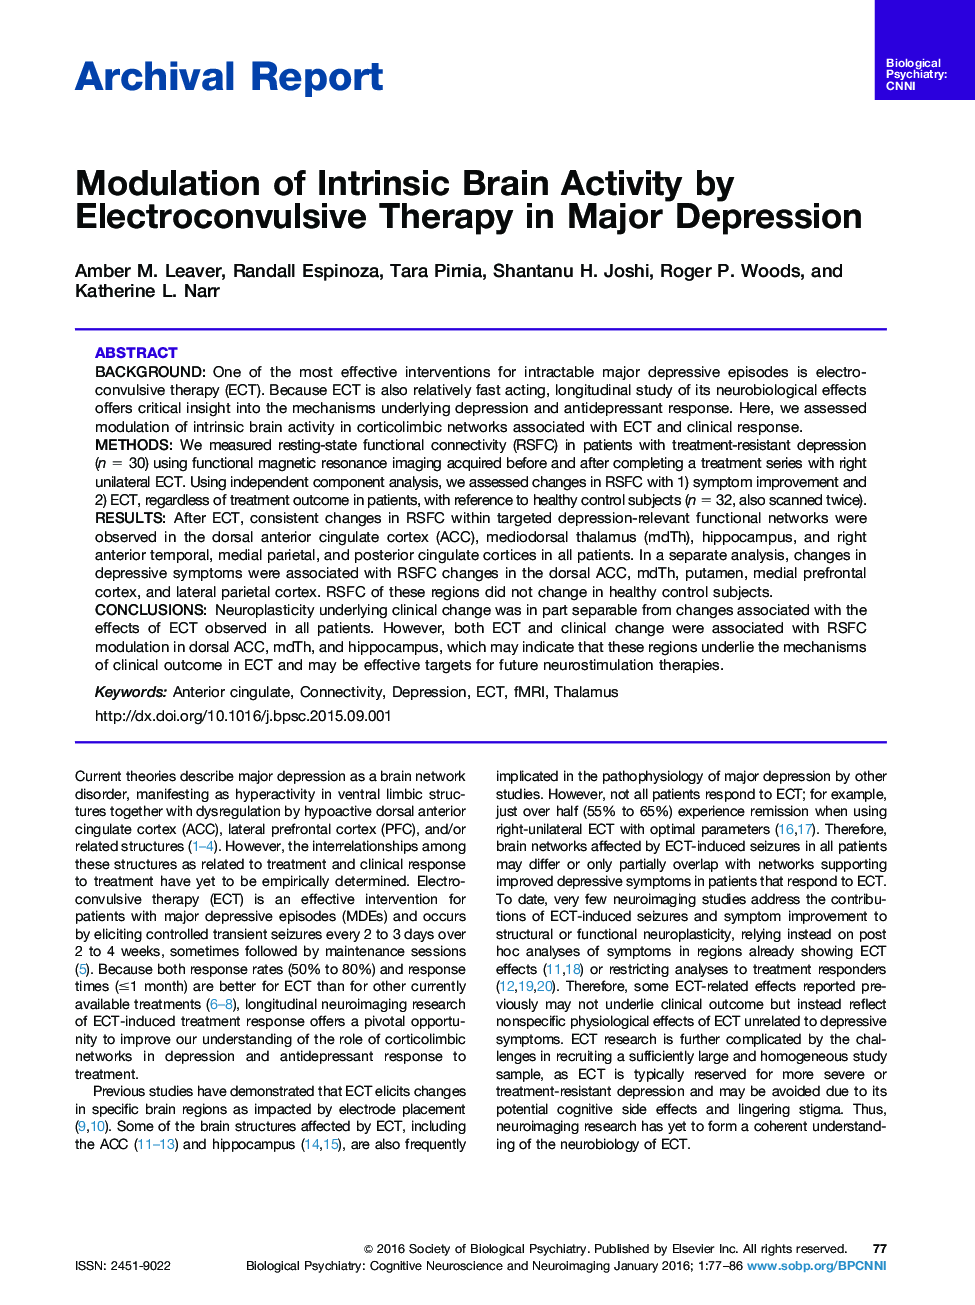 مدولاسیون فعالیت مغزی ذاتی با استفاده از درمان الکتروکواش در افسردگی عمده 